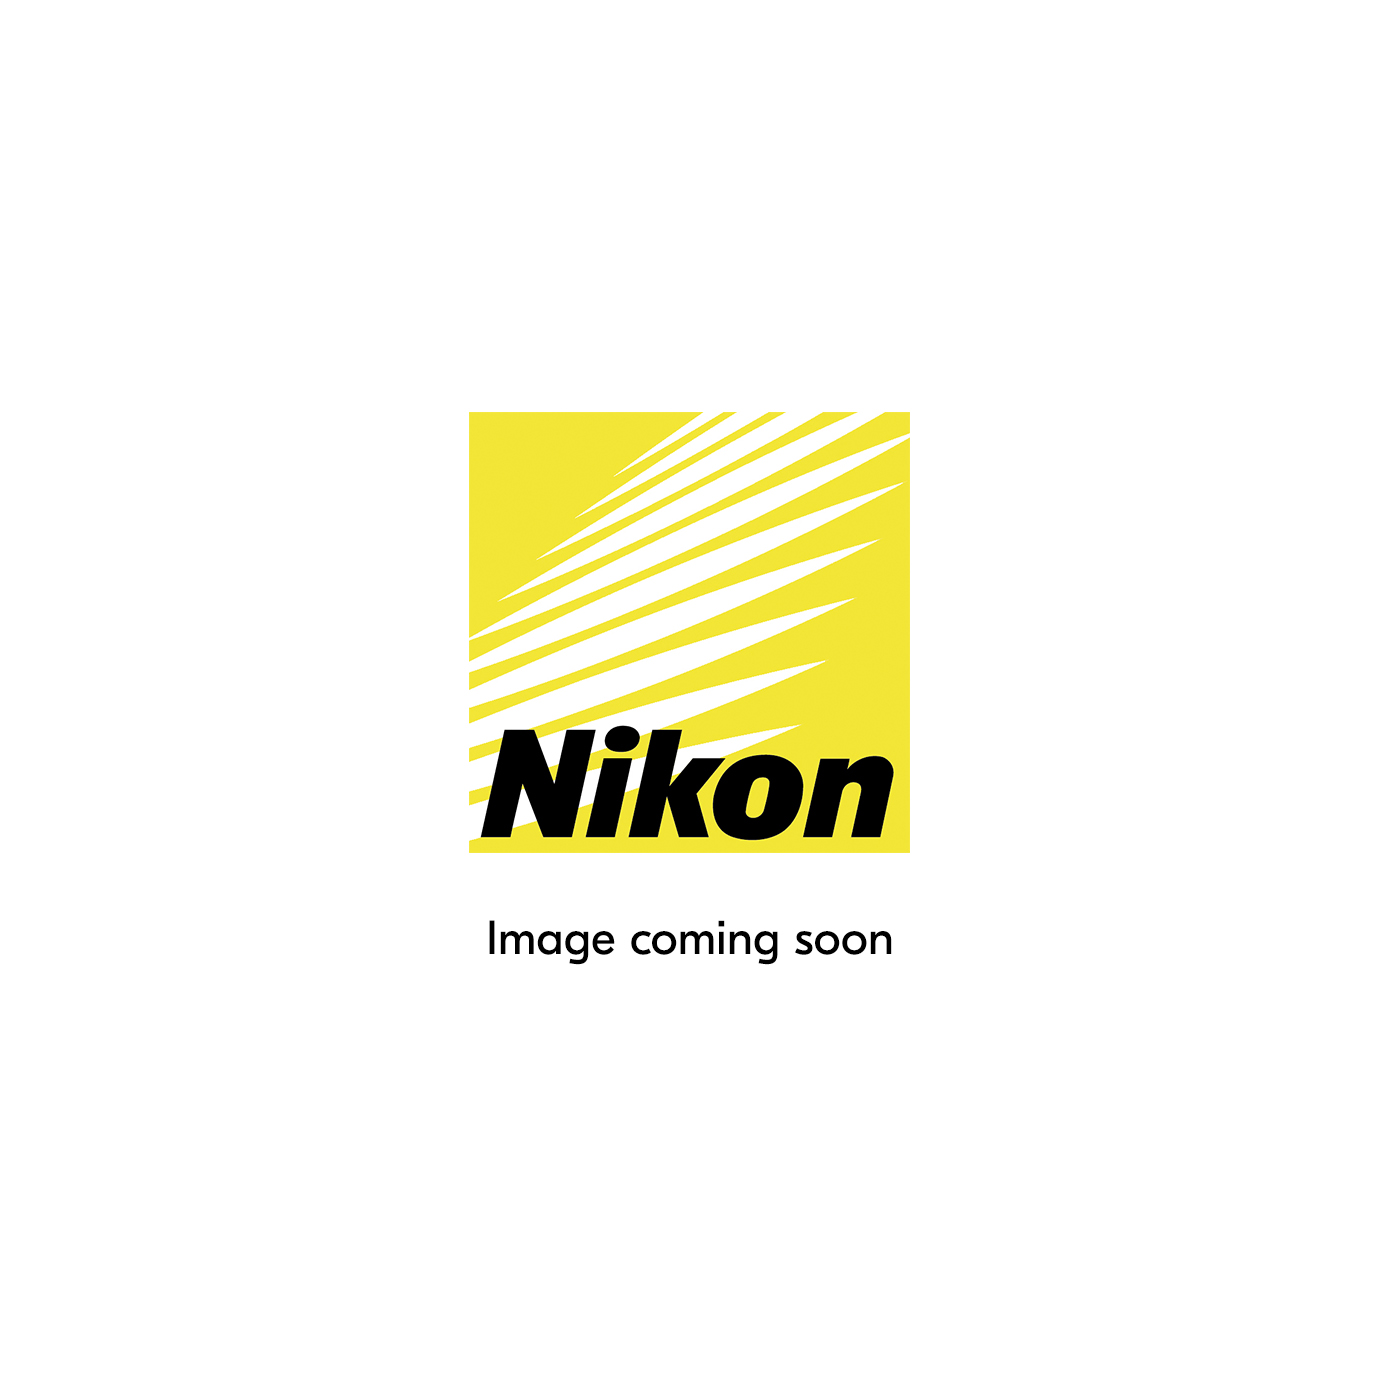 Кнопка L-Fn |  Фотоаппараты, объективы и аксессуары Nikon